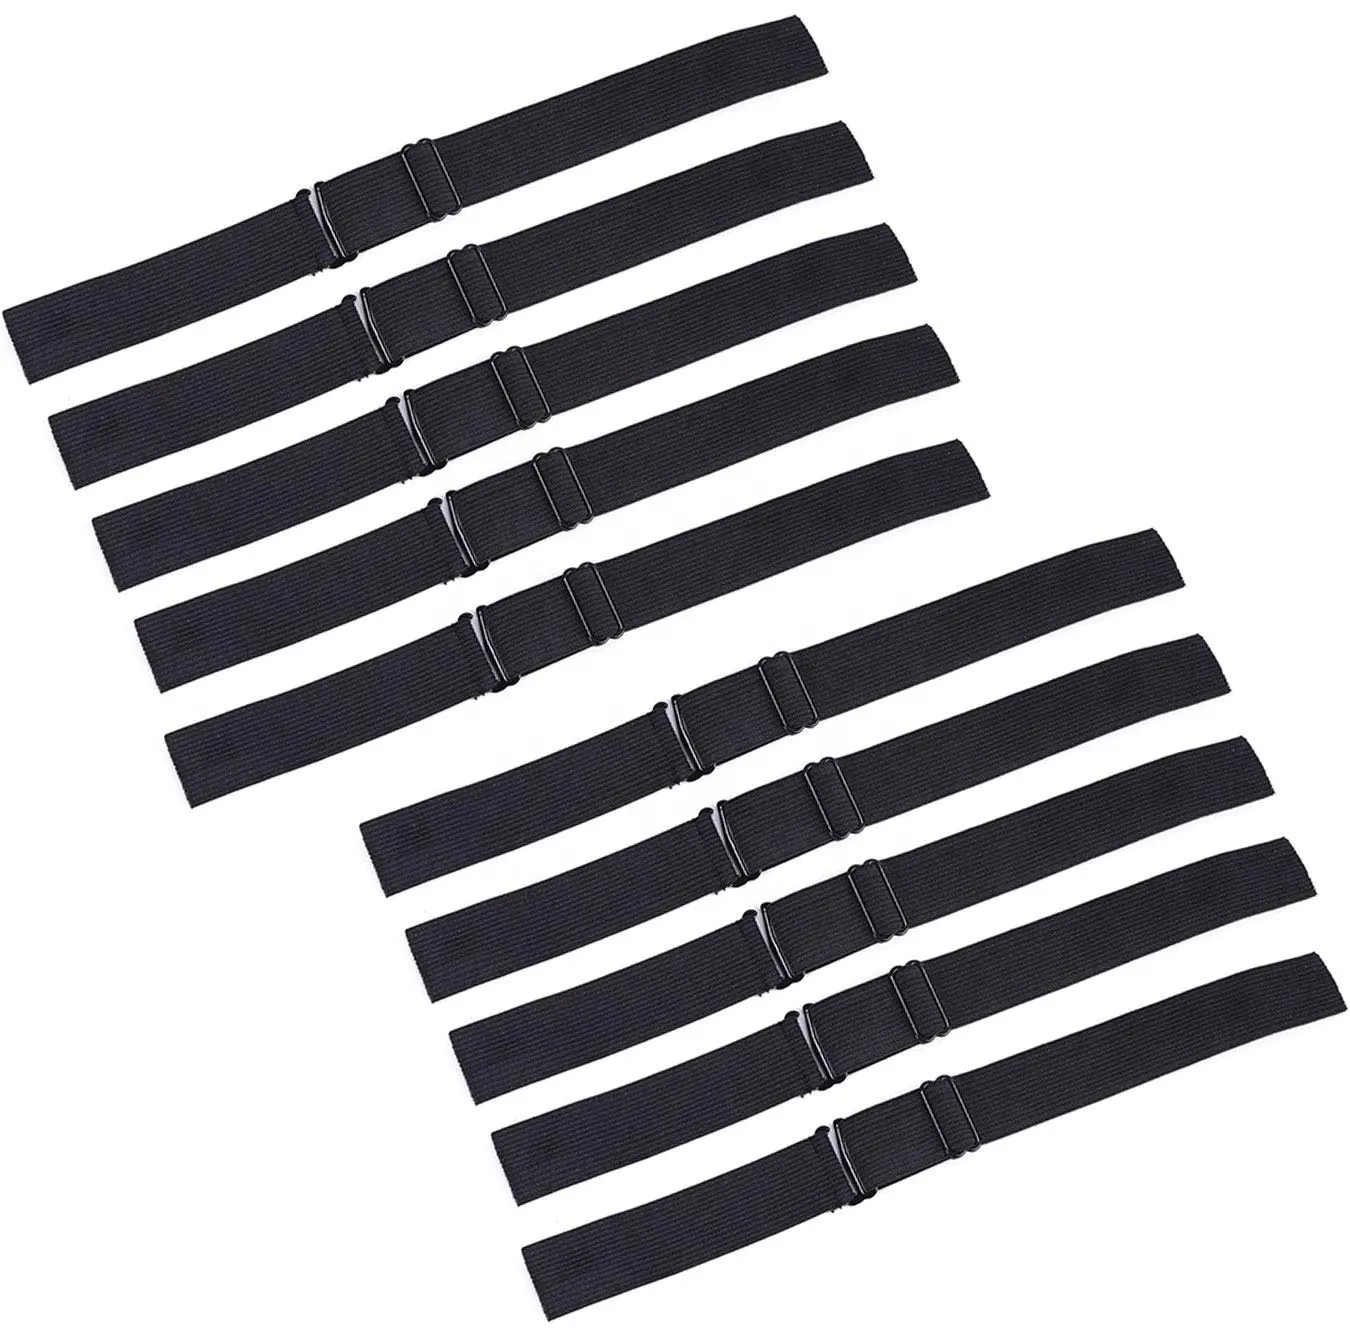 Agarre de Peluca de nailon ajustable de 2,5/3,0/3,5 cm de ancho, banda elástica negra para hacer pelucas de pelo, accesorios de herramientas de goma para coser encaje de red